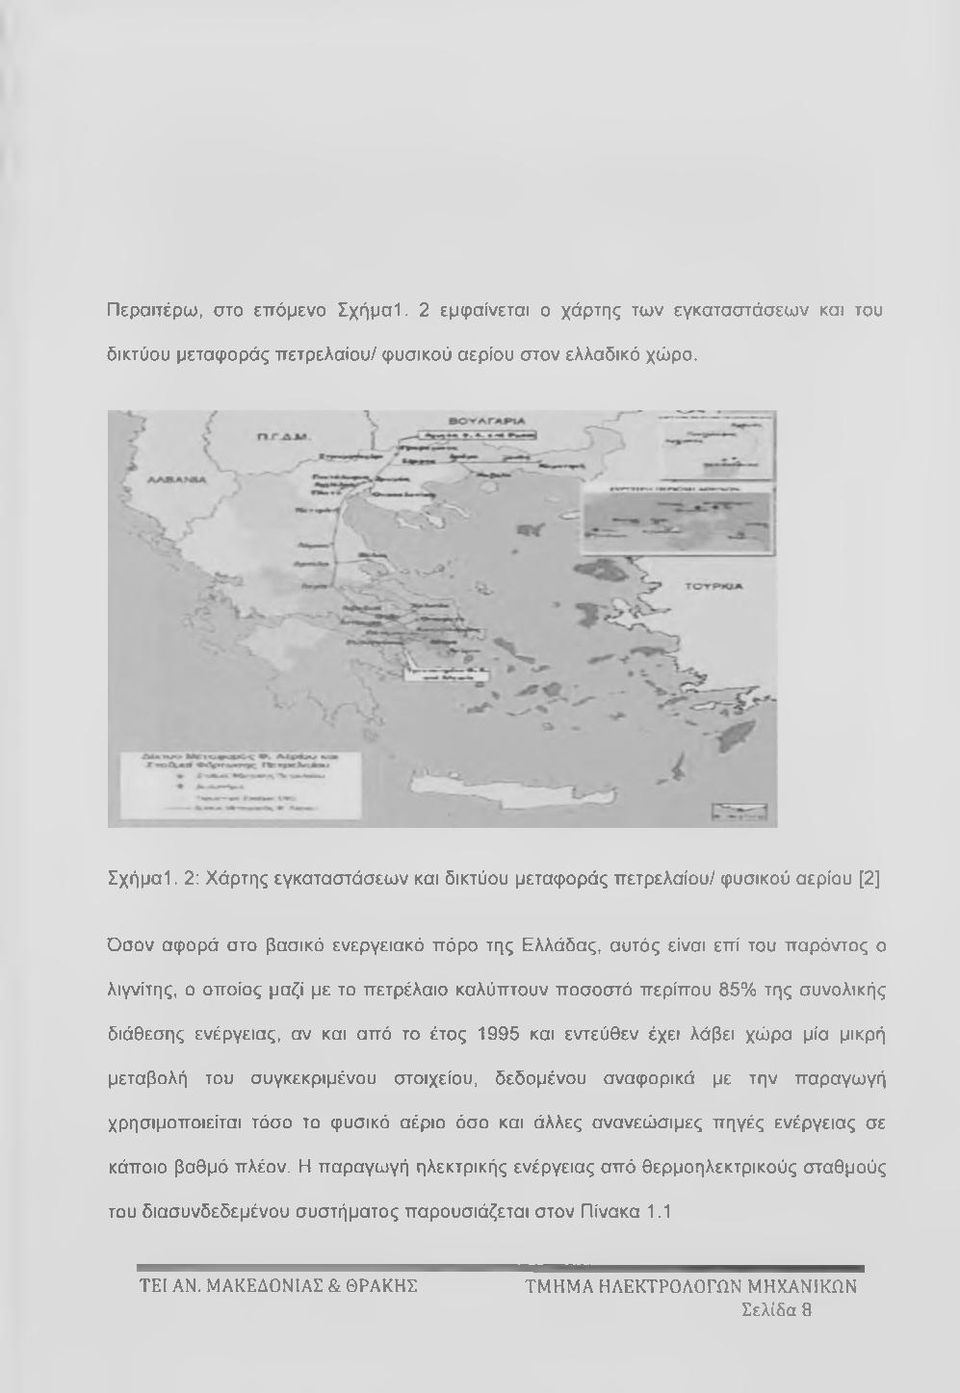 2: Χάρτης εγκαταστάσεων και δικτύου μεταφοράς πετρελαίου/ φυσικού αερίου [2] Όσον αφορά στο βασικό ενεργειακό πόρο της Ελλάδας, αυτός είναι επί του παρόντος ο λιγνίτης, ο οποίος μαζί με το